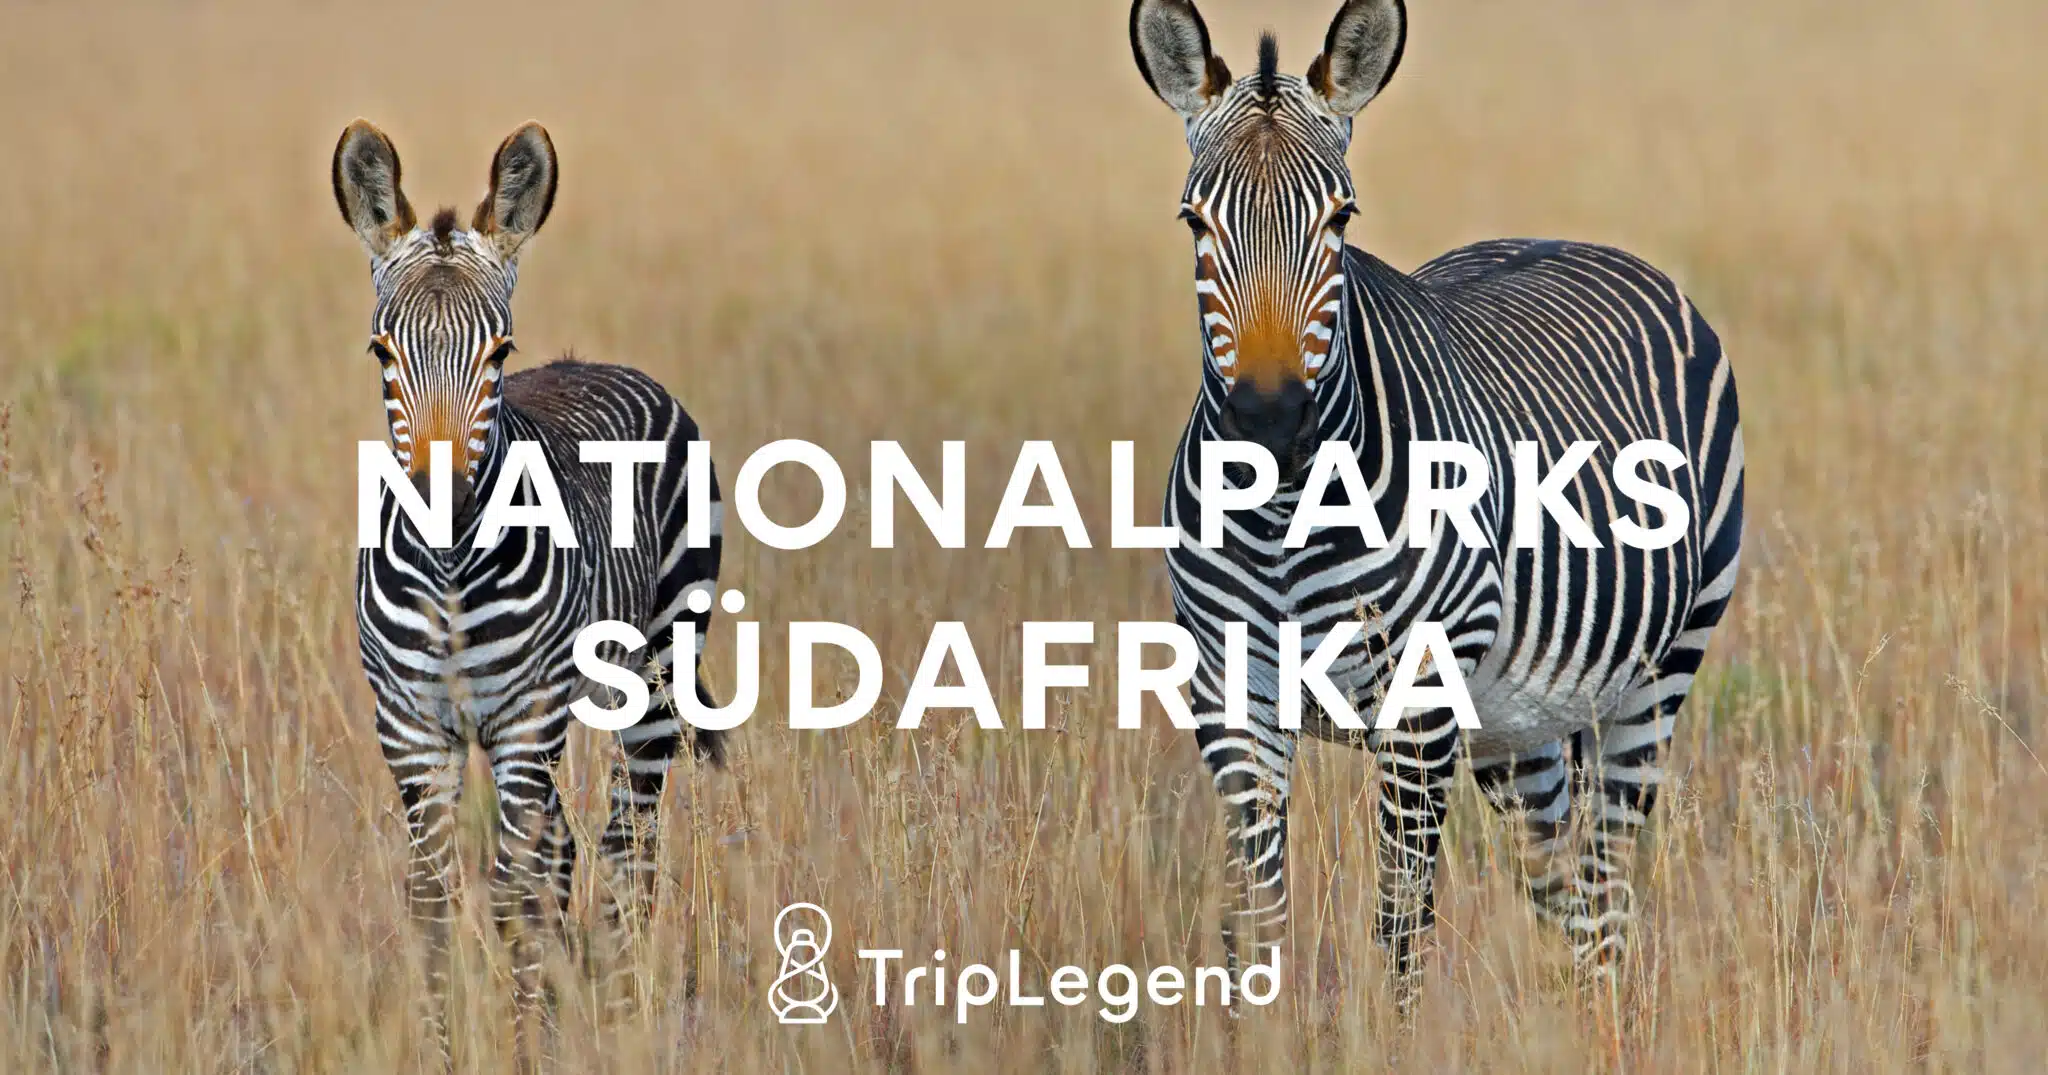 Etelä-Afrikan kansallispuistot Scaled.jpg